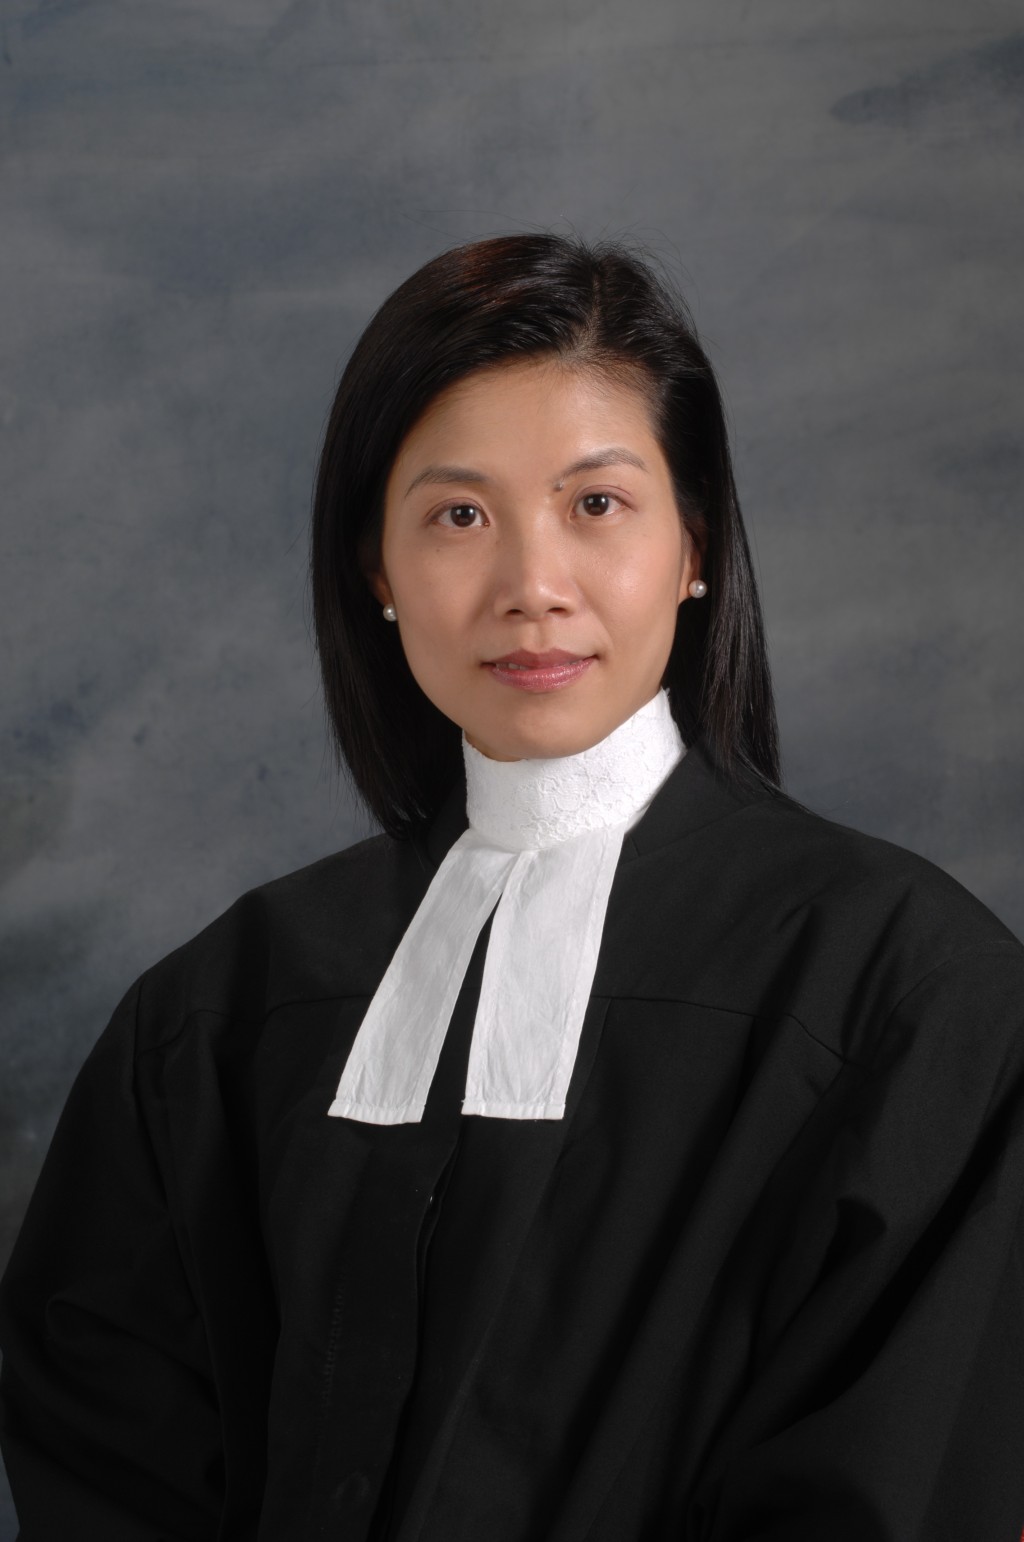 署理主任裁判官香淑娴将案件押后两周后判刑。资料图片